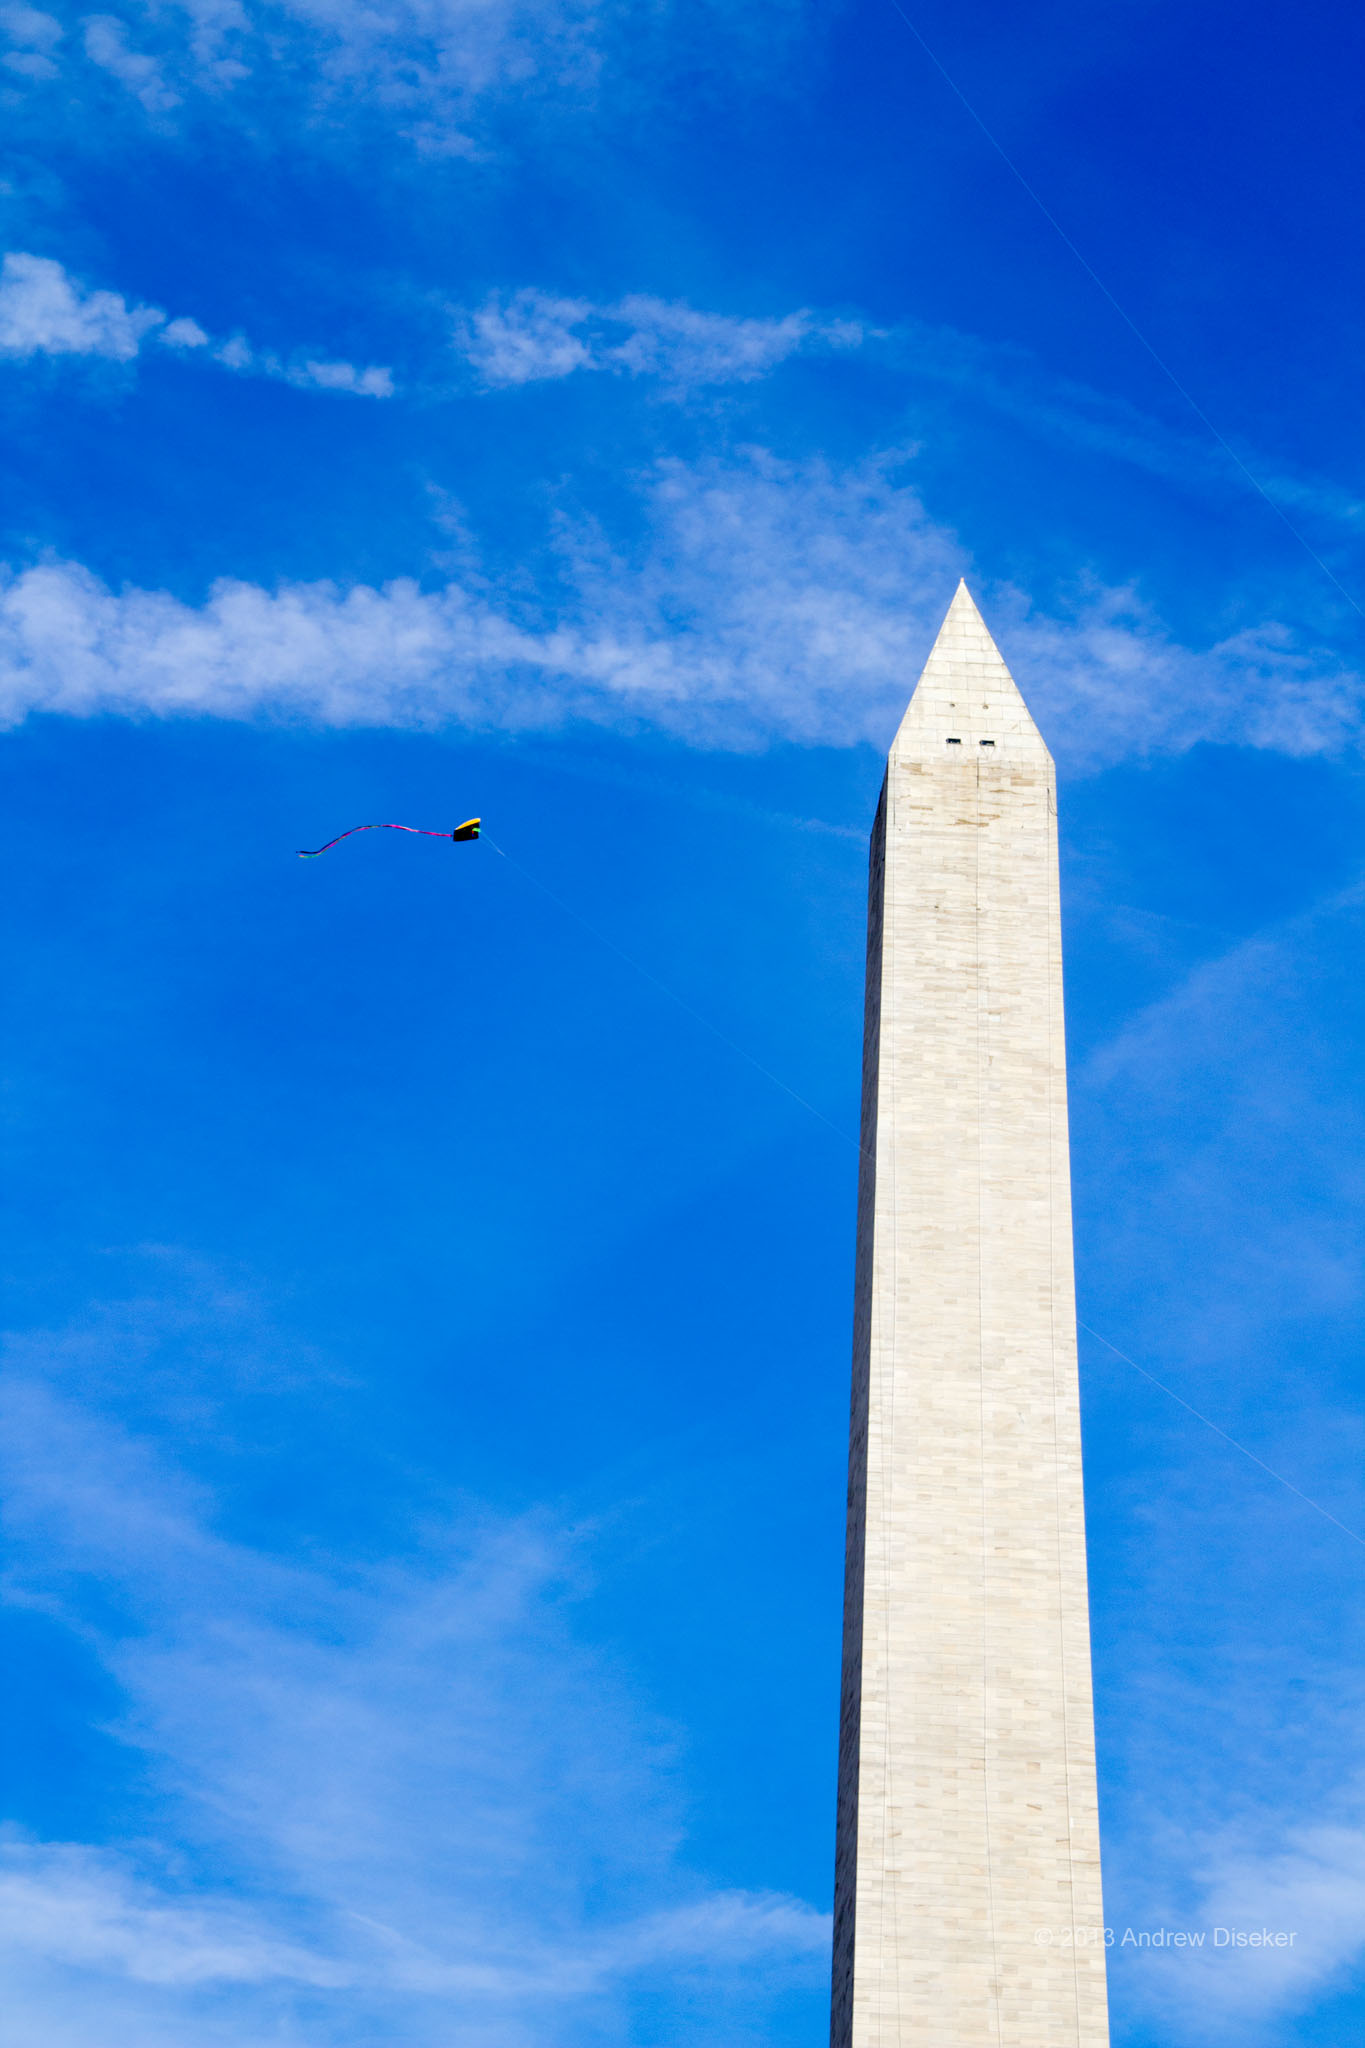 Kite in the sky next to Washington Monument